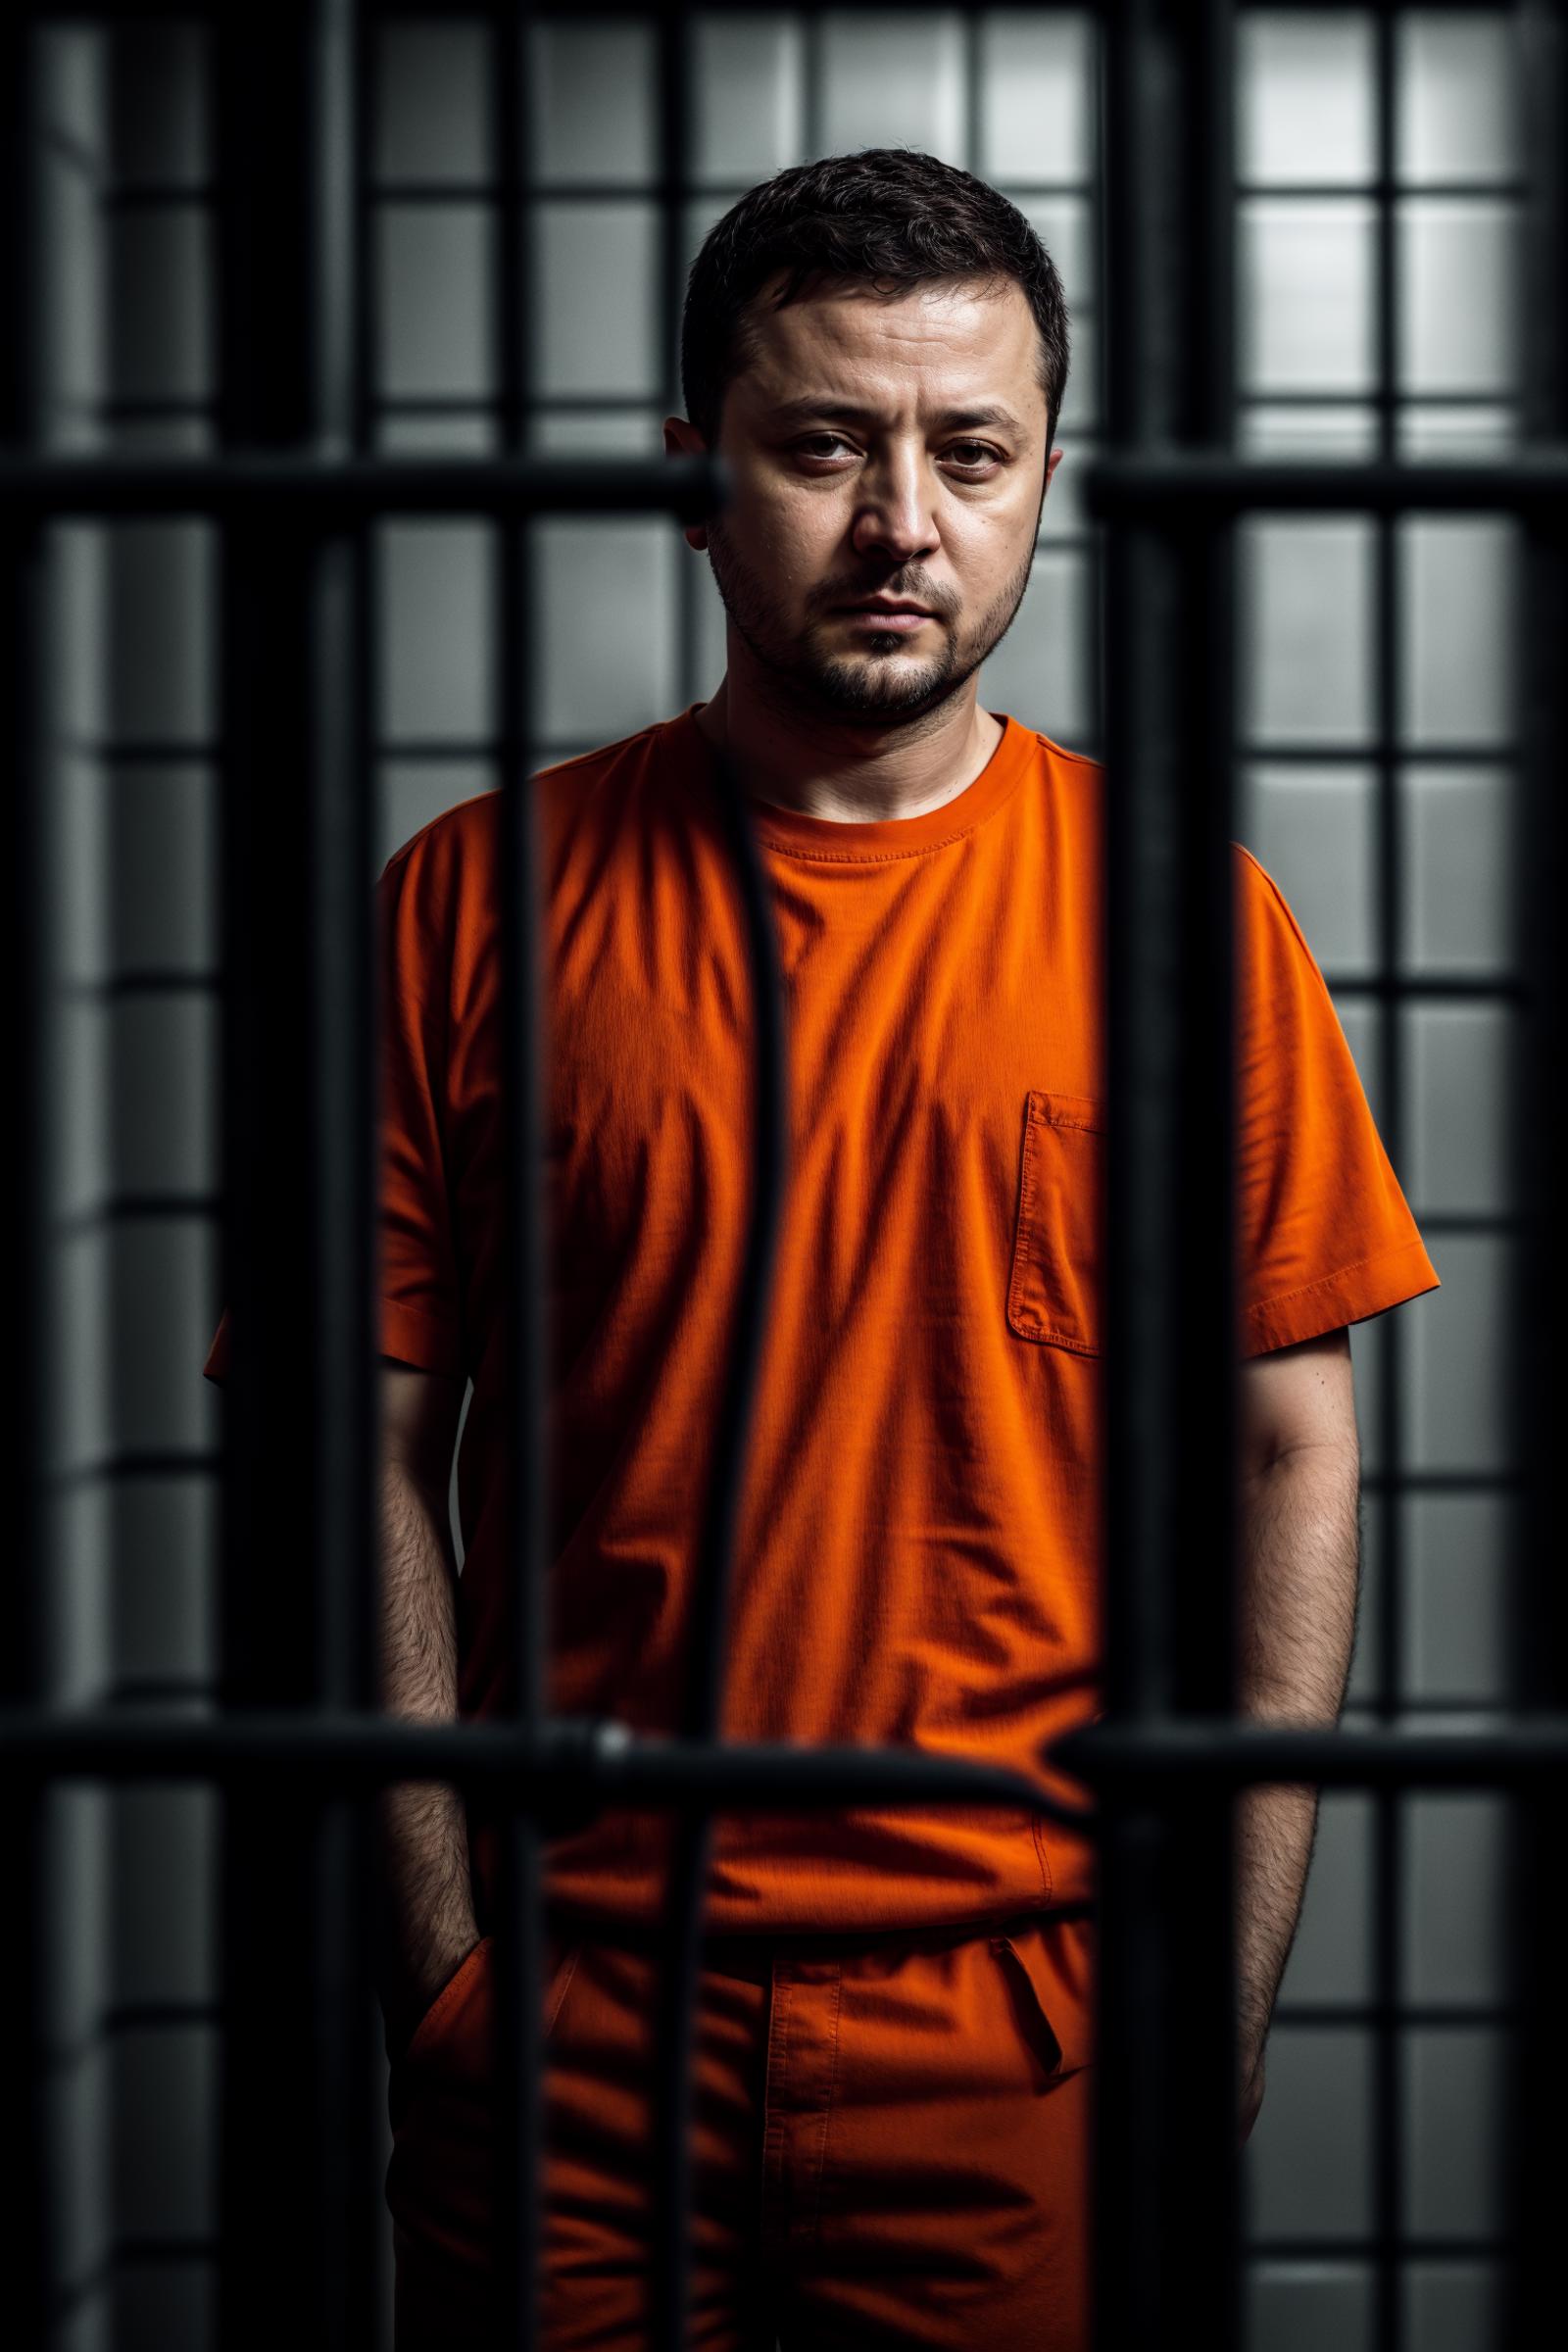 A man in an orange shirt behind bars.